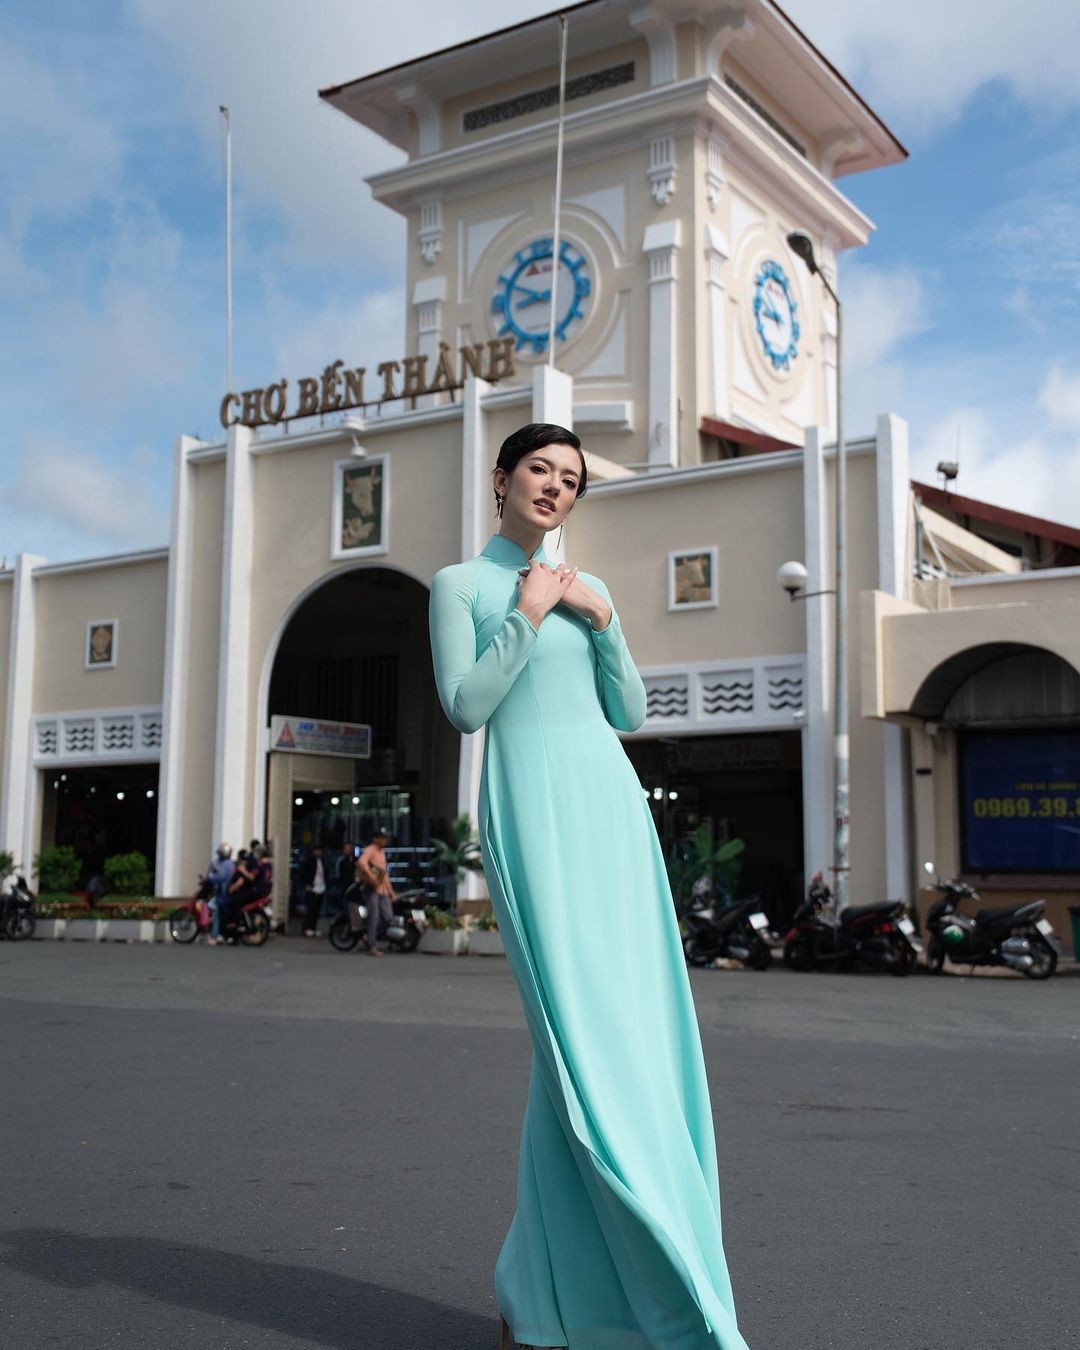 Trên Instagram, Megumi Wilson cho biết, đã có một trải nghiệm tuyệt vời khi mặc áo dài, trang phục truyền thống của Việt Nam, chụp ảnh trước chợ Bến Thành.